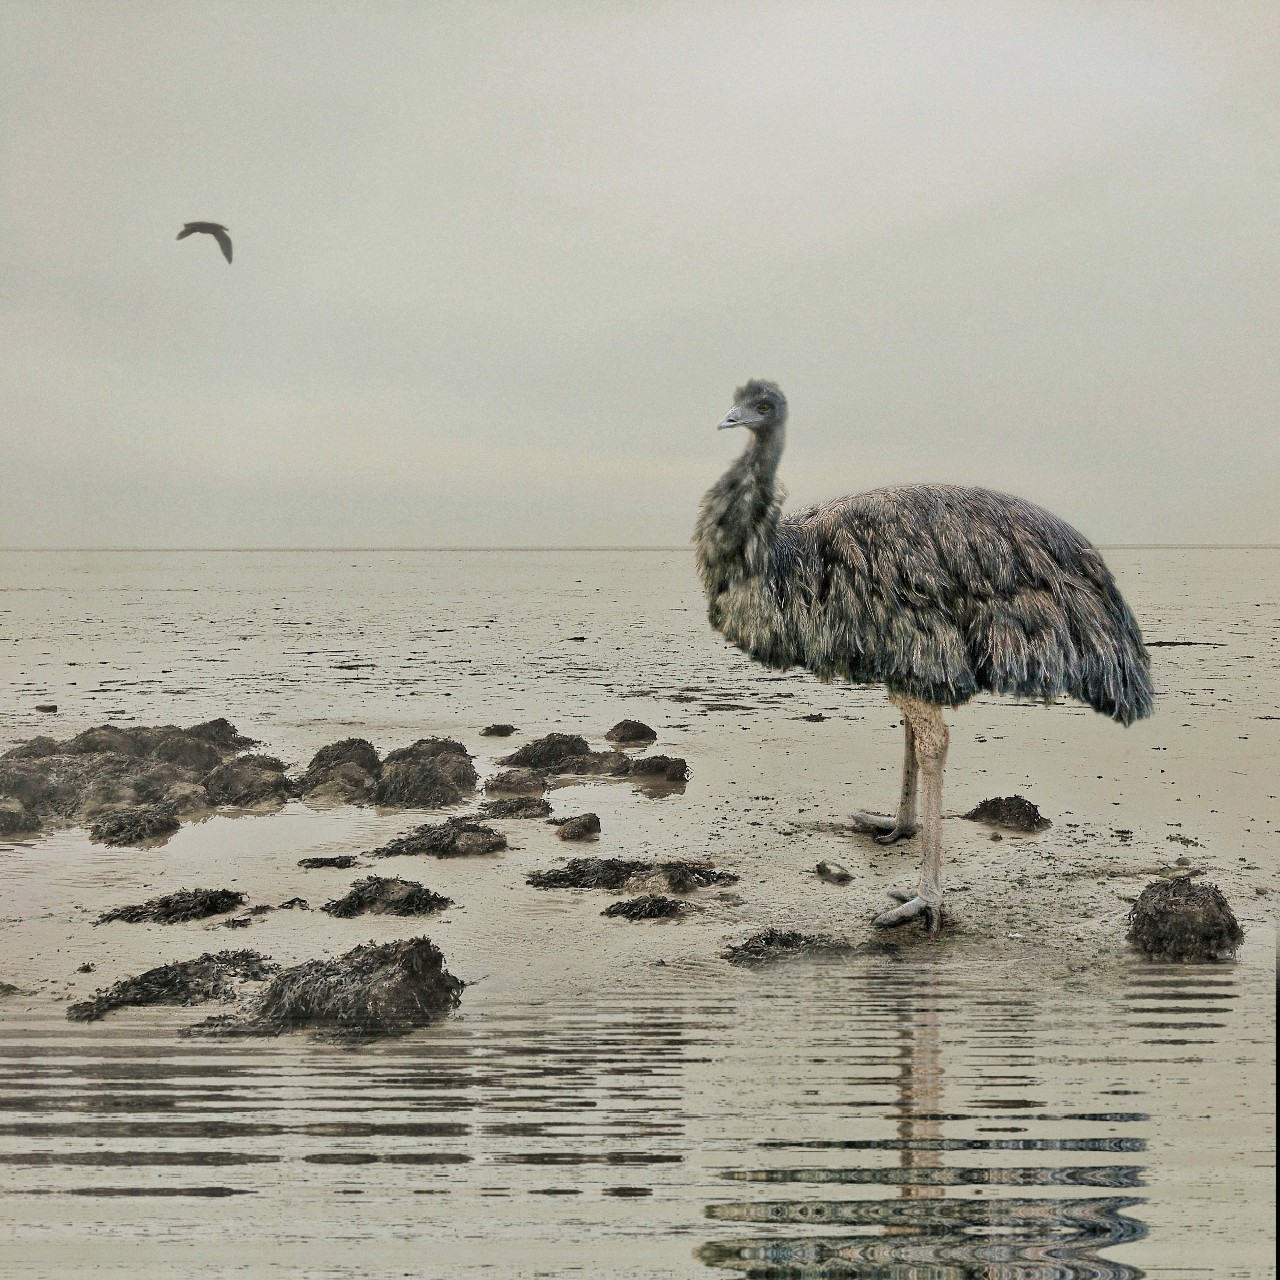 Surrealistische fotocollage van een emu op het strand bij eb, van Wieringen. Foto vsn Ruben van Gogh